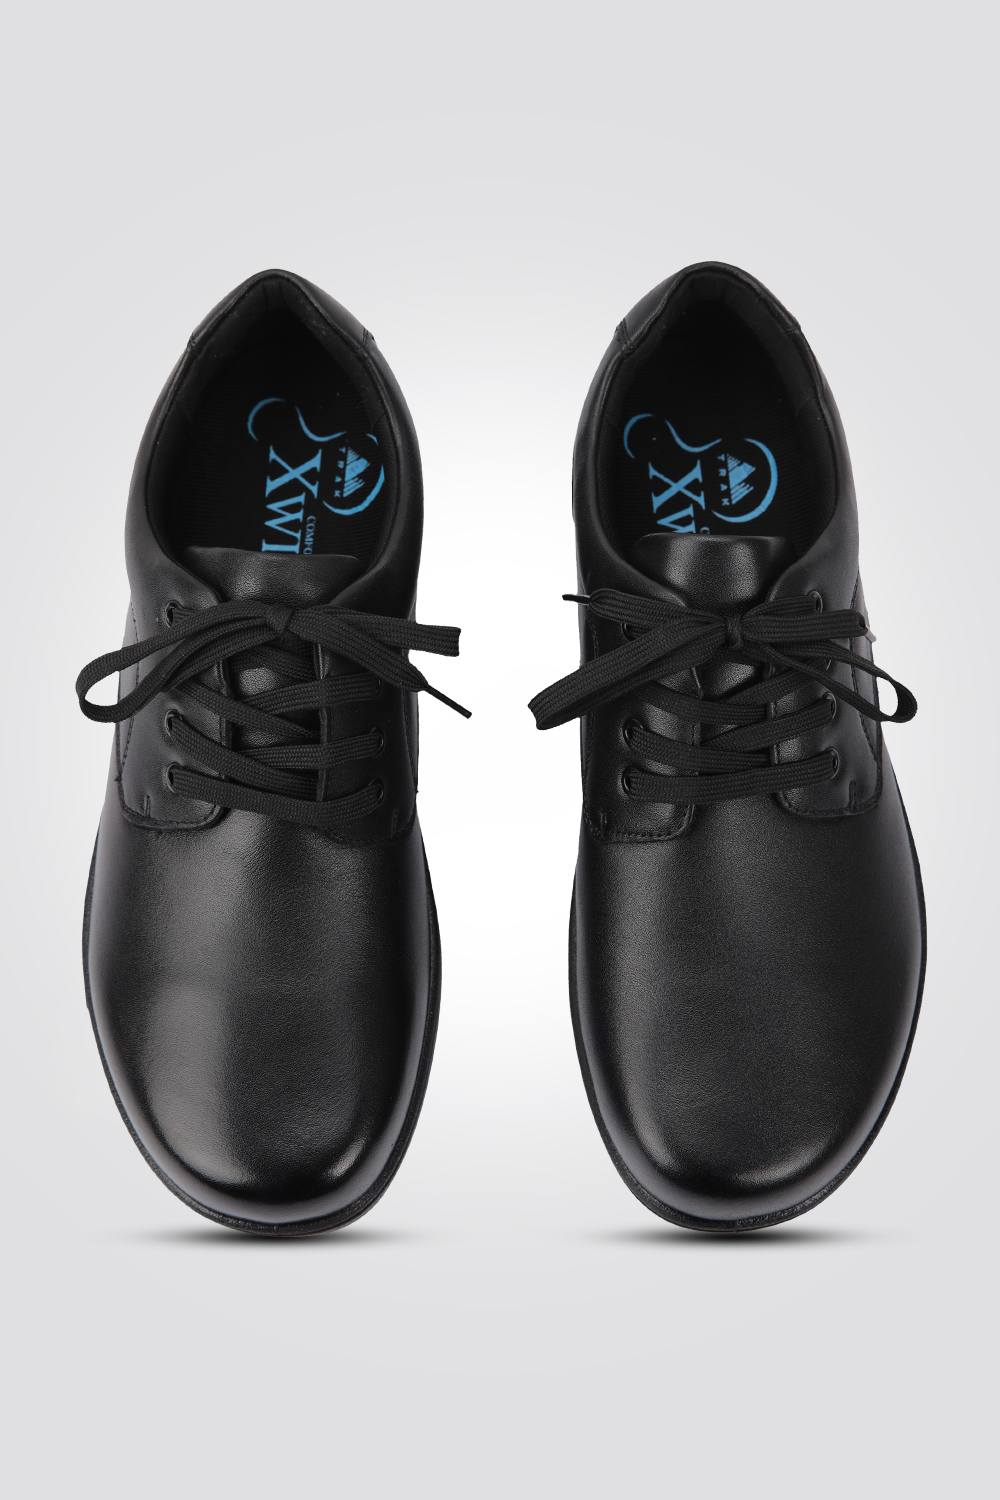 נעליים אלגנטיות דגם דולב בצבע שחור